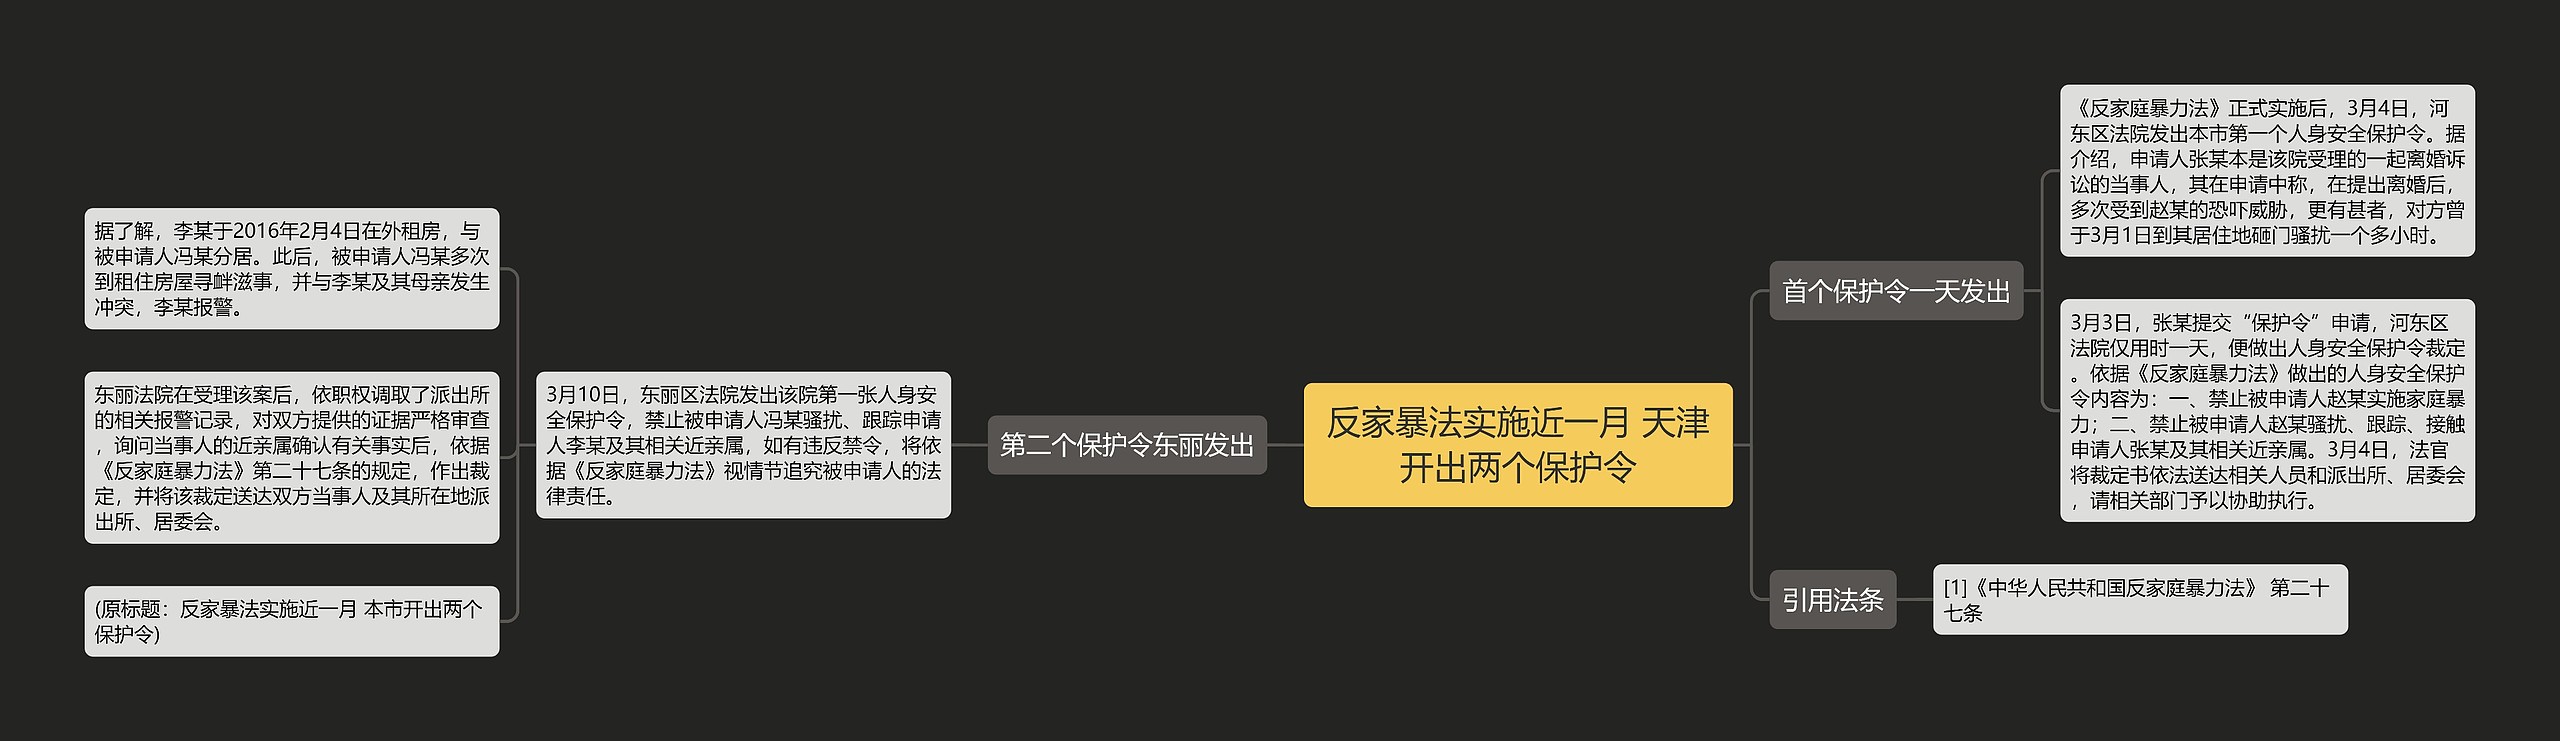 反家暴法实施近一月 天津开出两个保护令思维导图